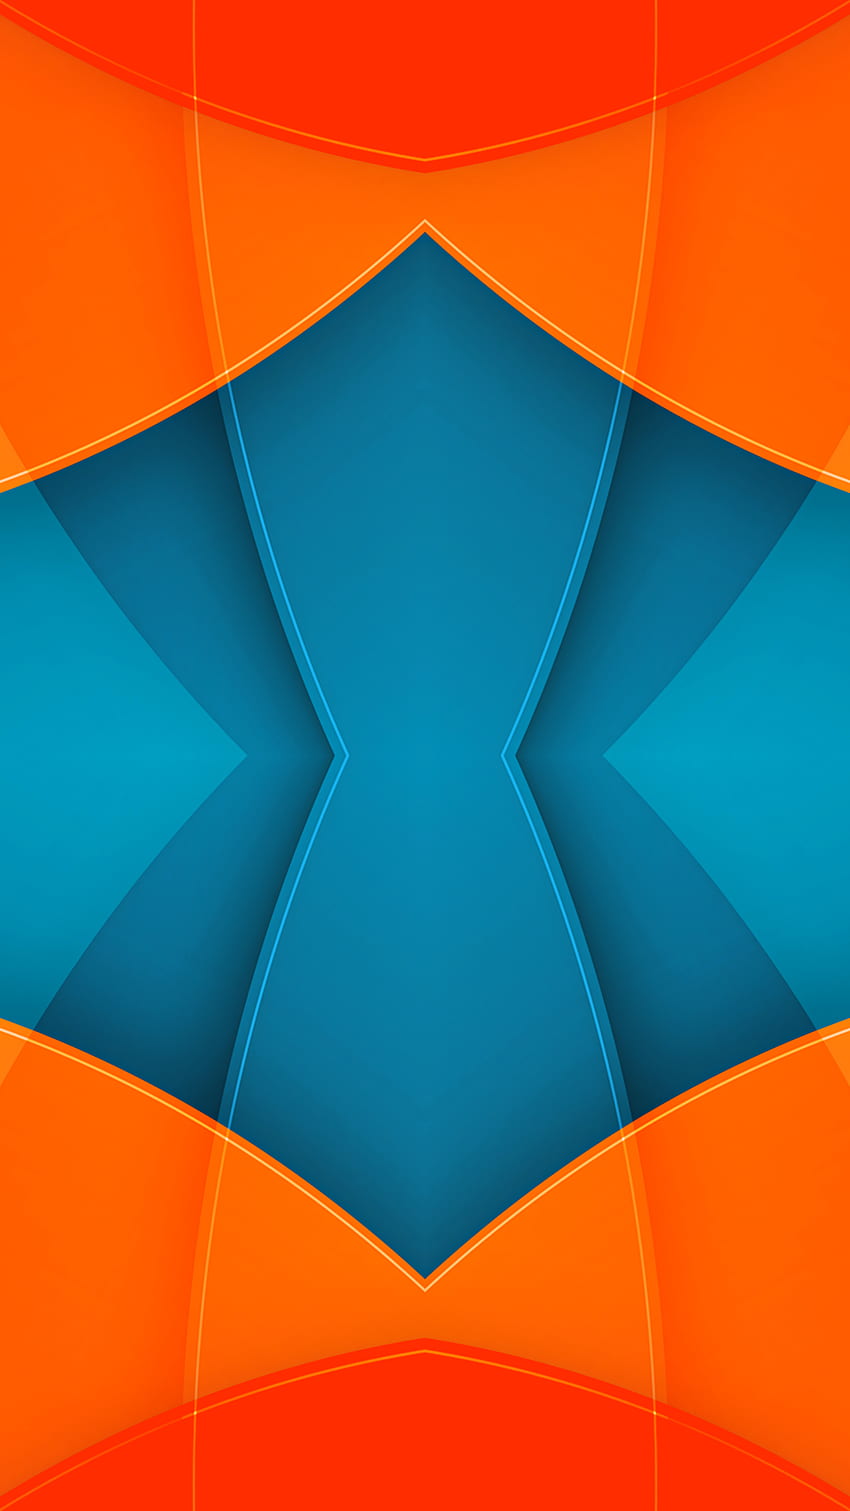 dsdsa, naranja, nuevo, azul, material, sombra, formas, textura, diseño, geométrico, patrón, resumen fondo de pantalla del teléfono